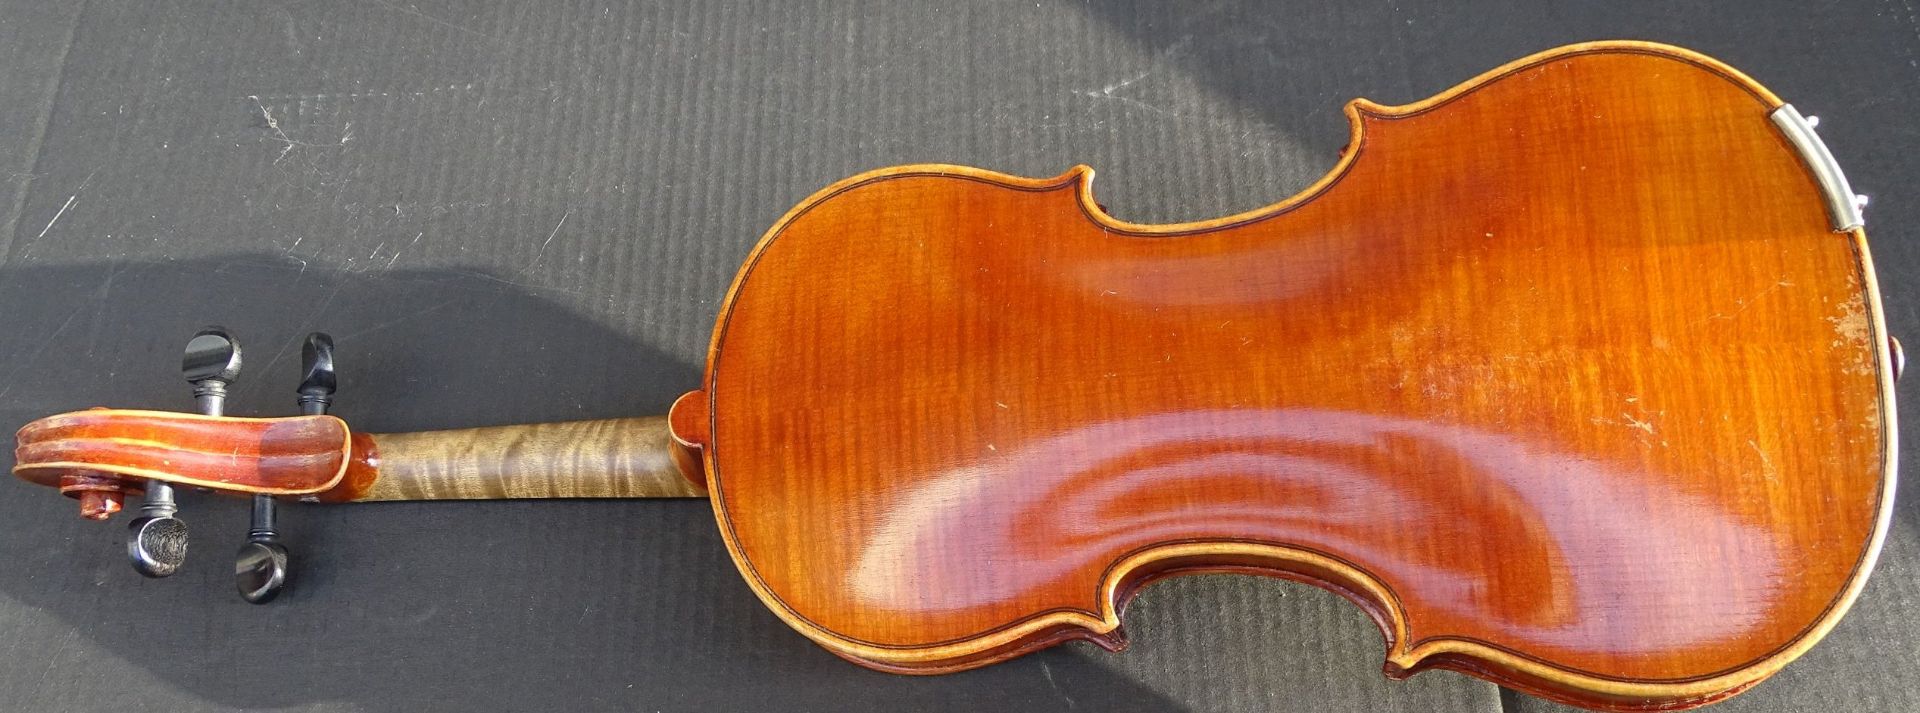 Geige mit Bogen in Koffer, L-55 cm, Gebrauchsspuren - Bild 8 aus 9